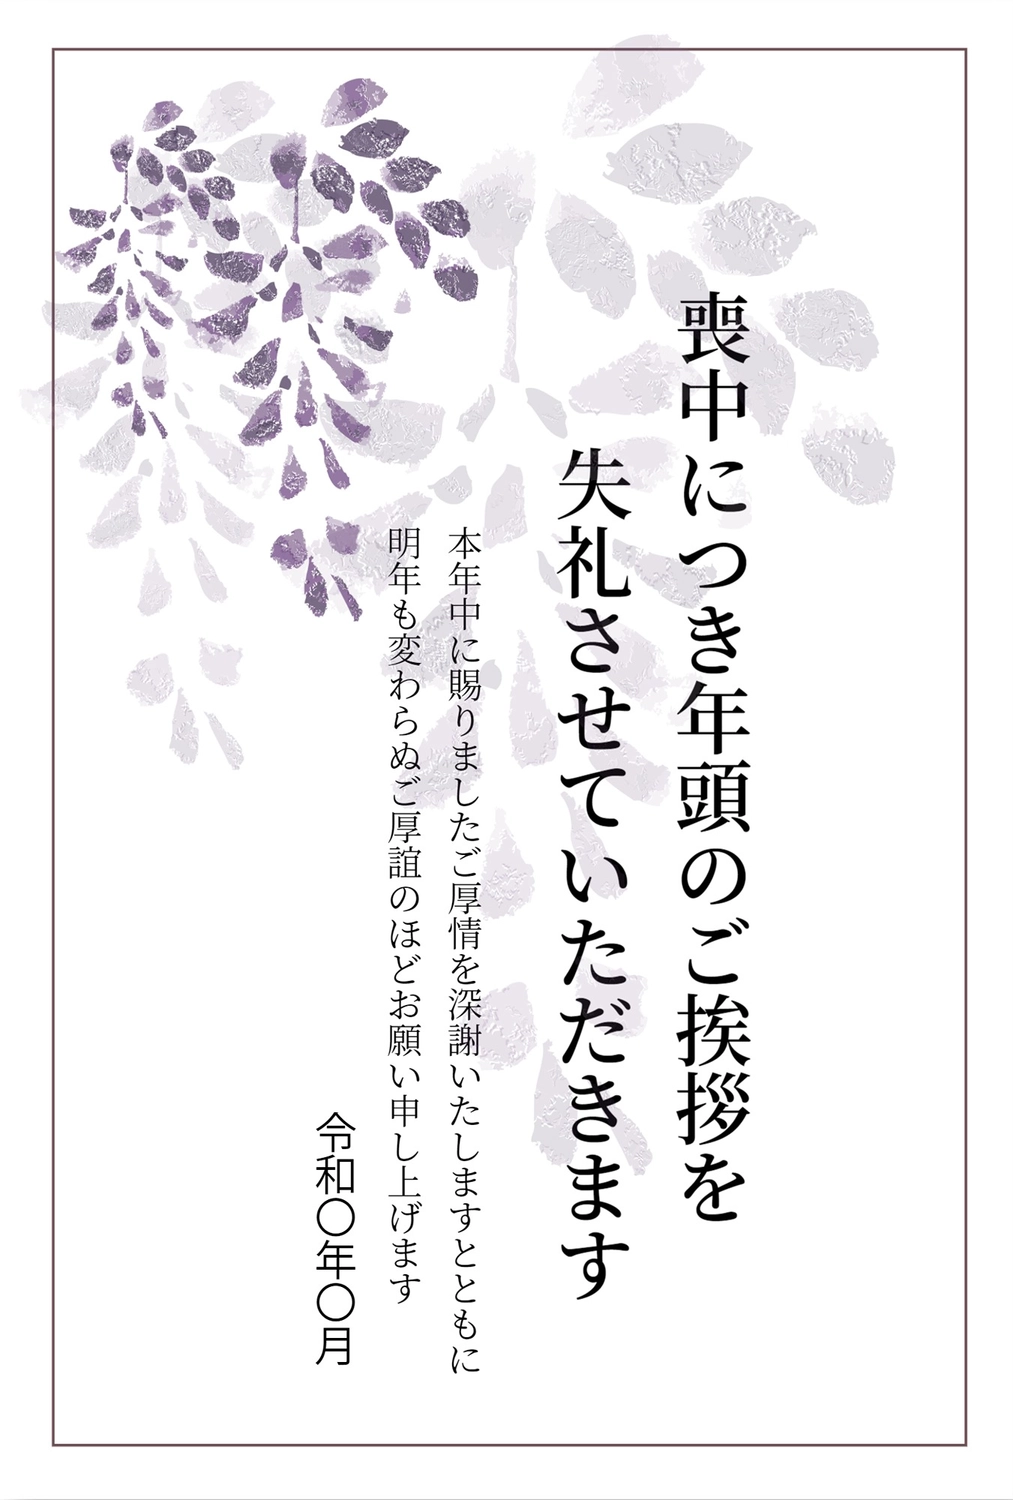 藤の喪中はがき, wisteria (esp. Japanese wisteria, Wisteria floribunda), purple flower, death, Mourning Postcard template